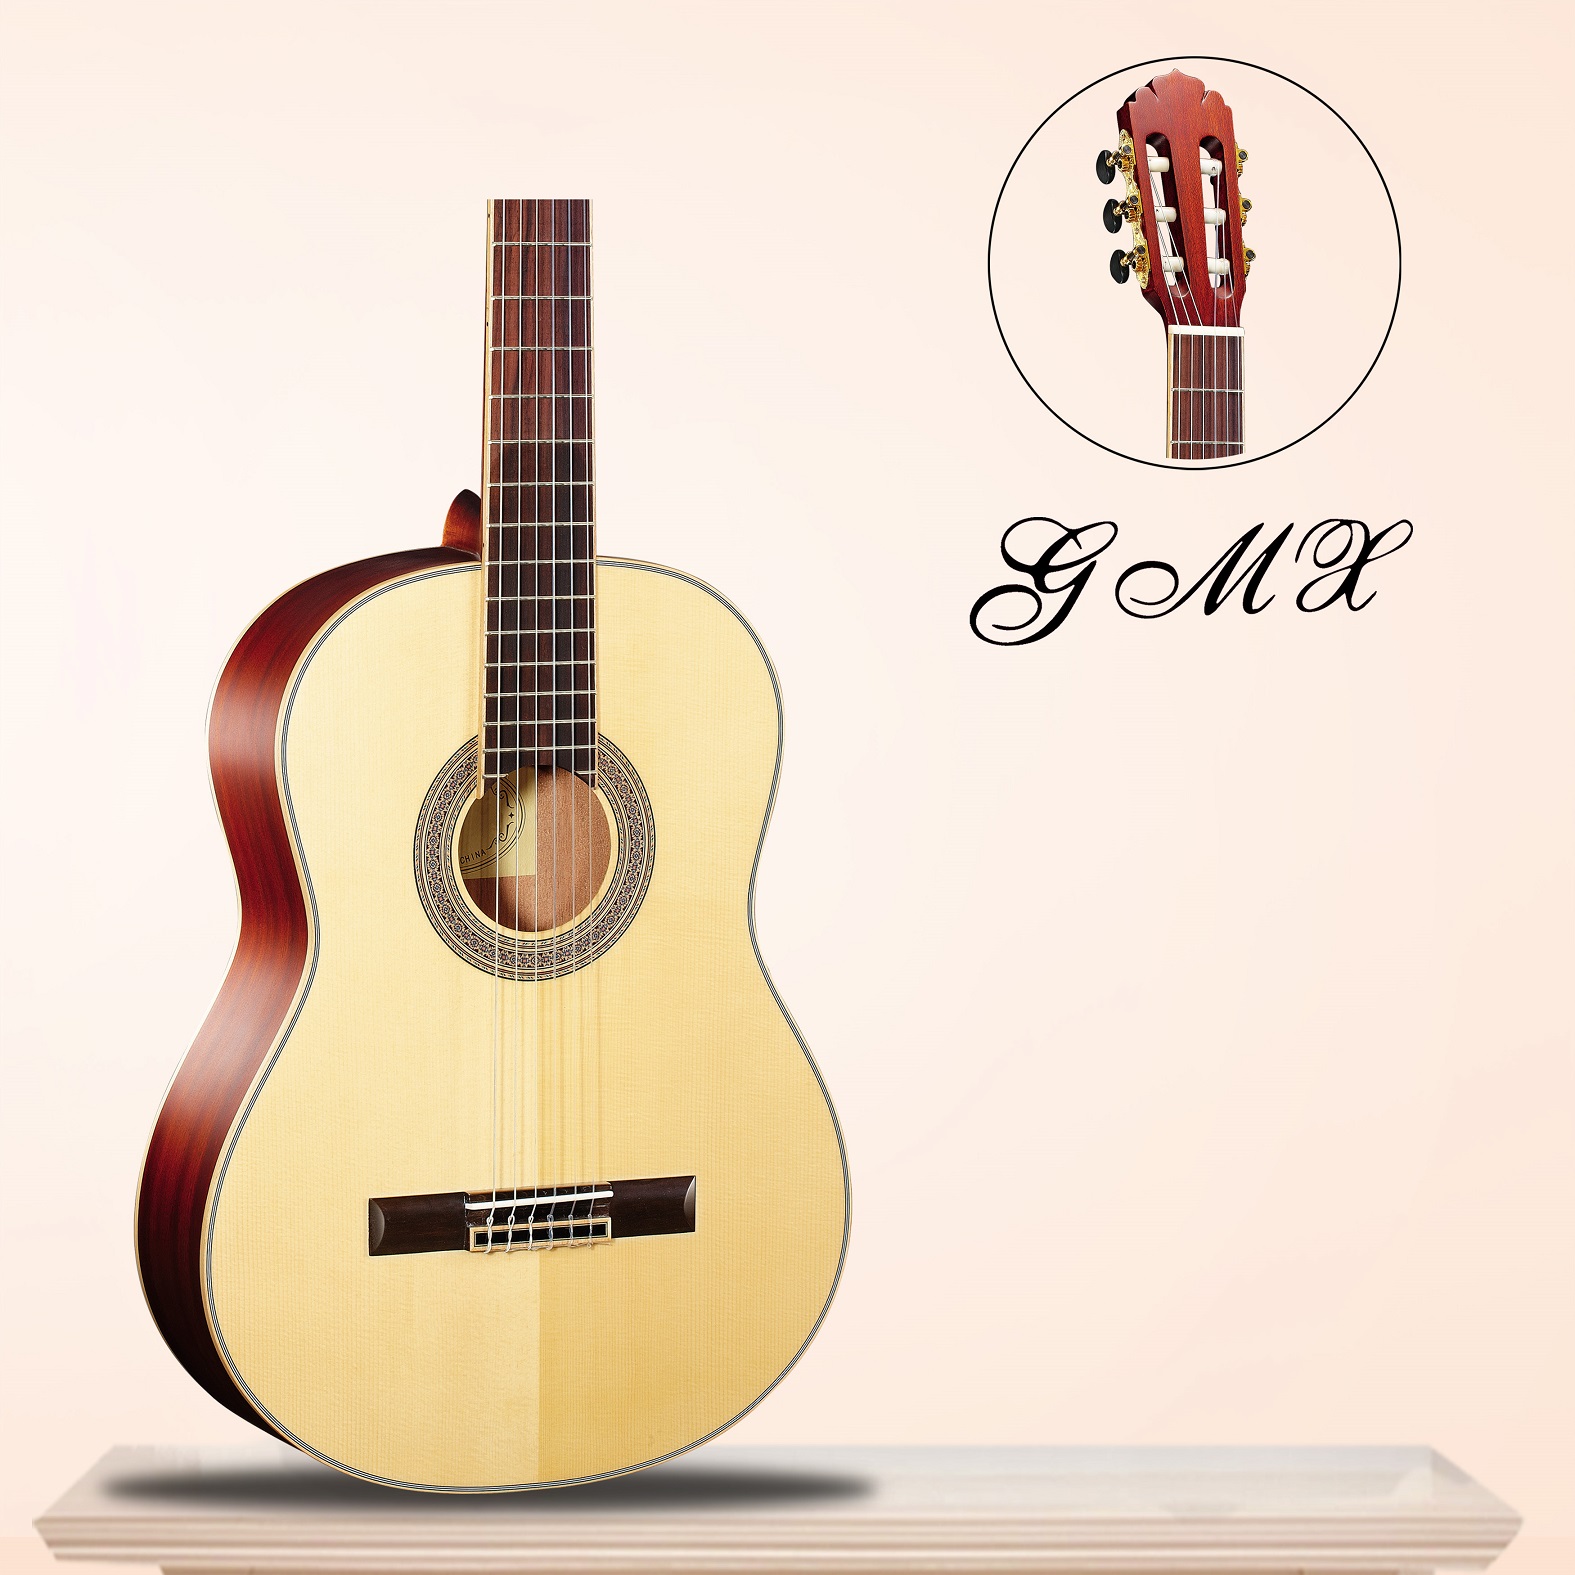 Alta qualidade de guitarra clássica da China GMX13738